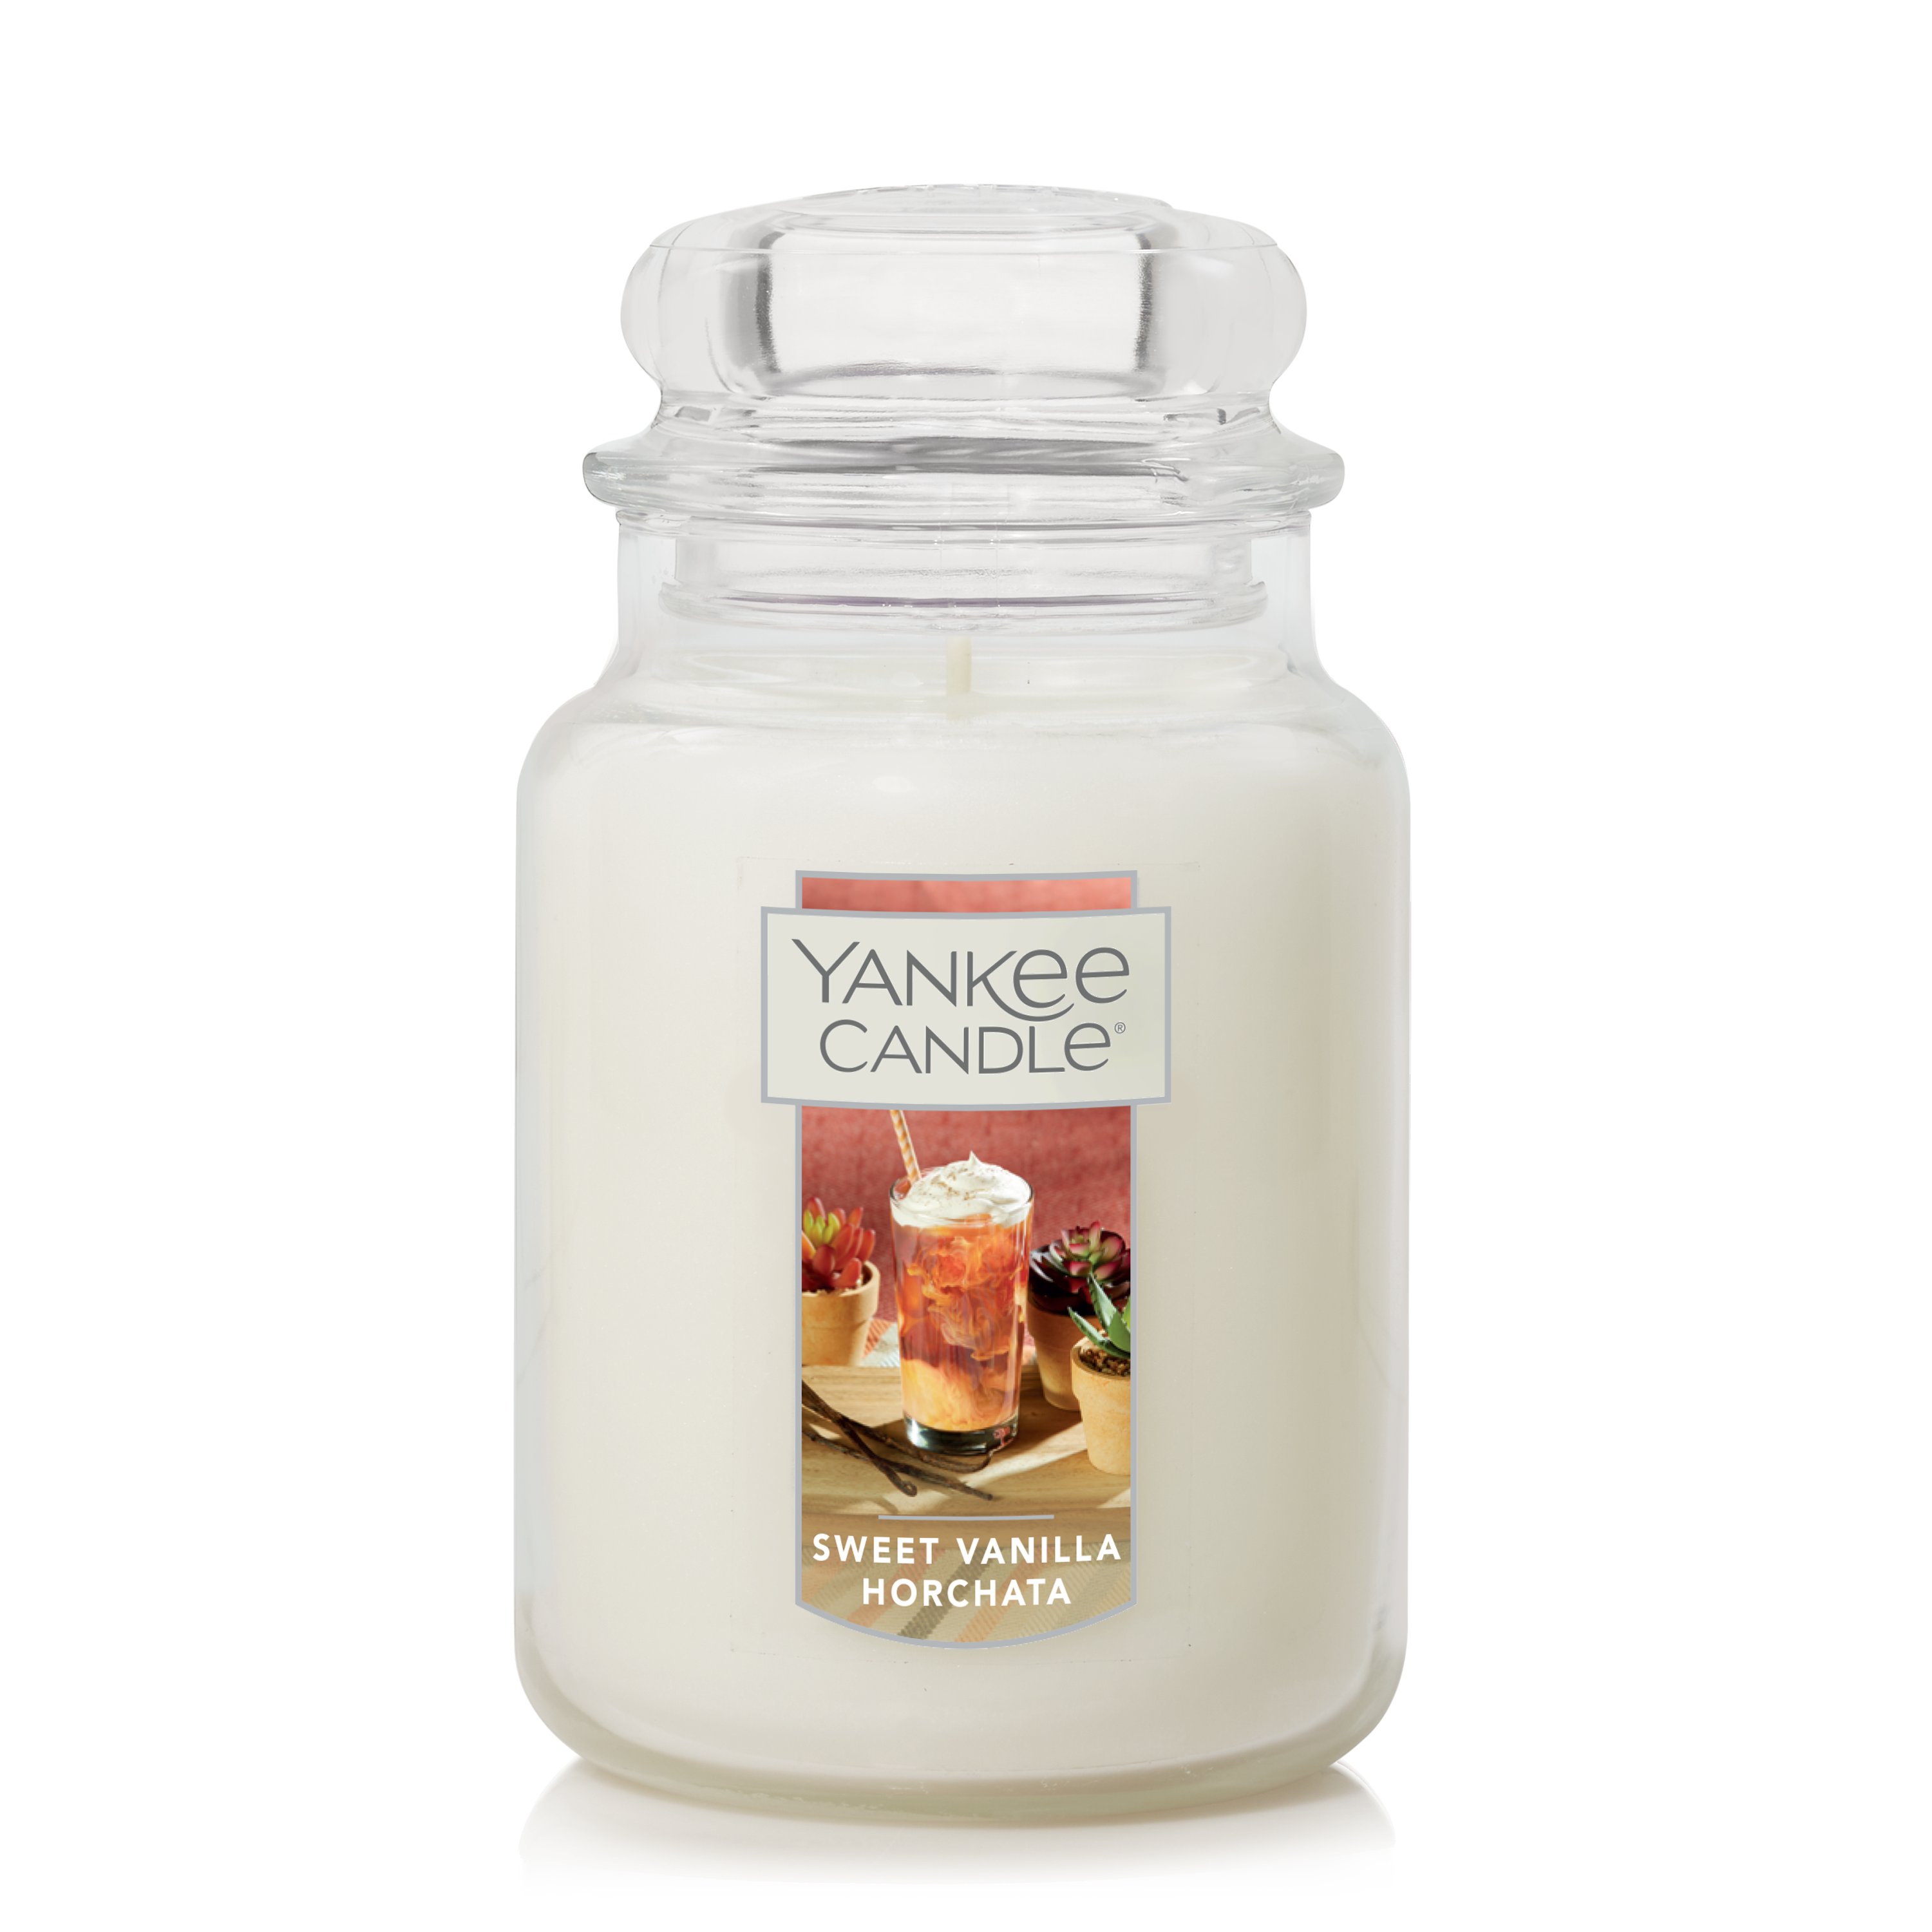 Yankee Candle Sweet Vanilla Horchata Original Large Jar Candle, White, 22 oz